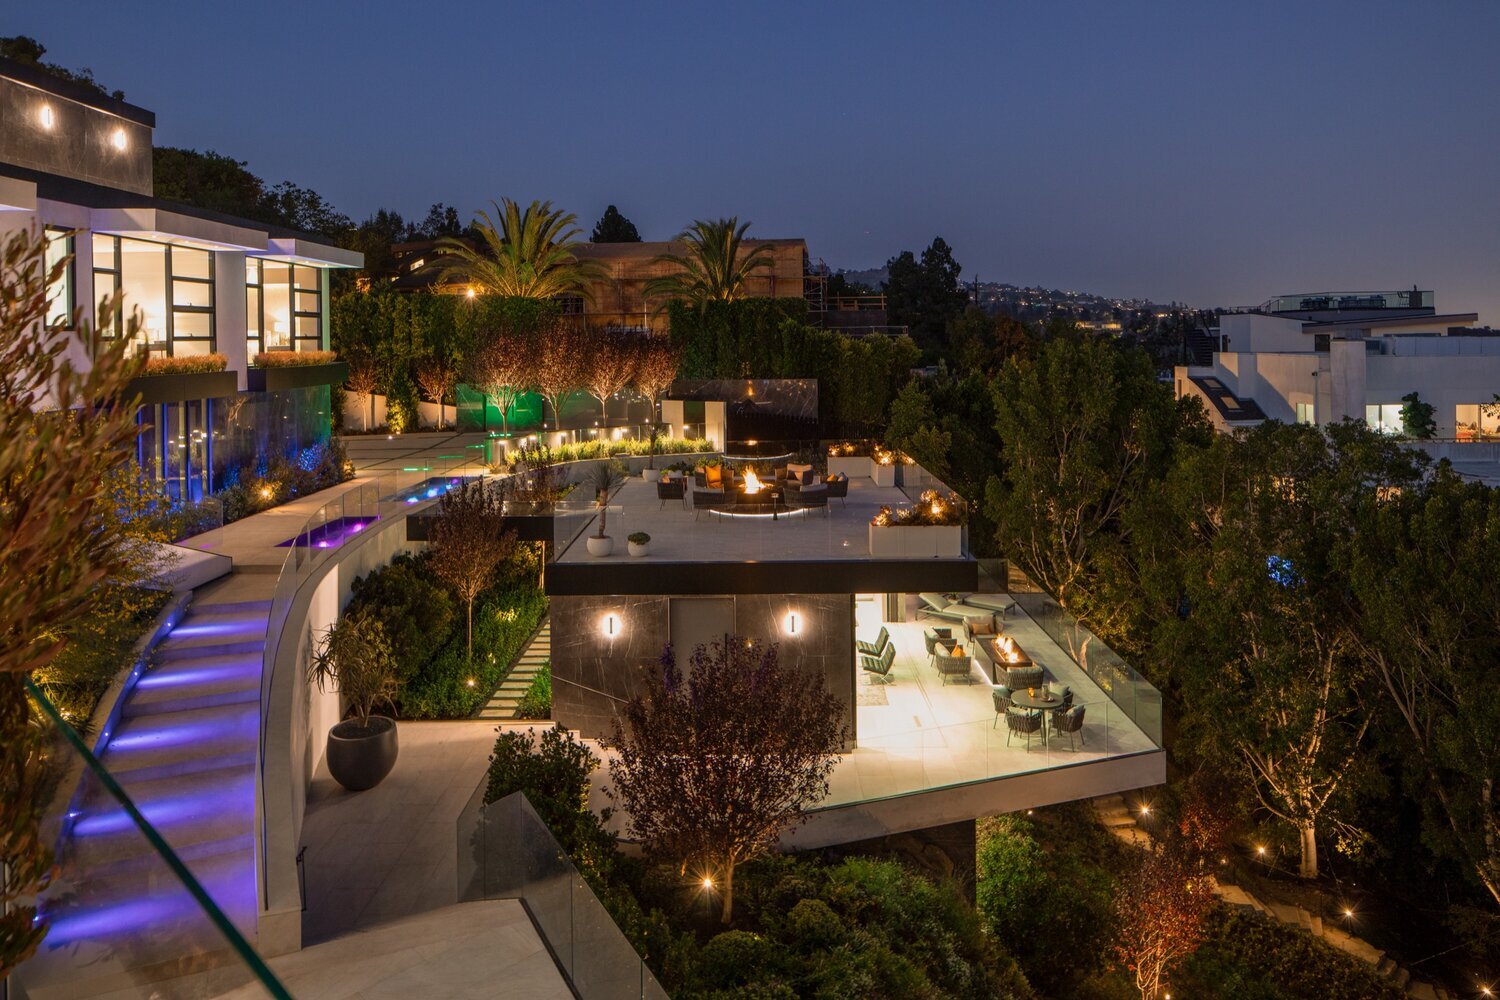 luxury resort style homes & LED lighting, modern design blog